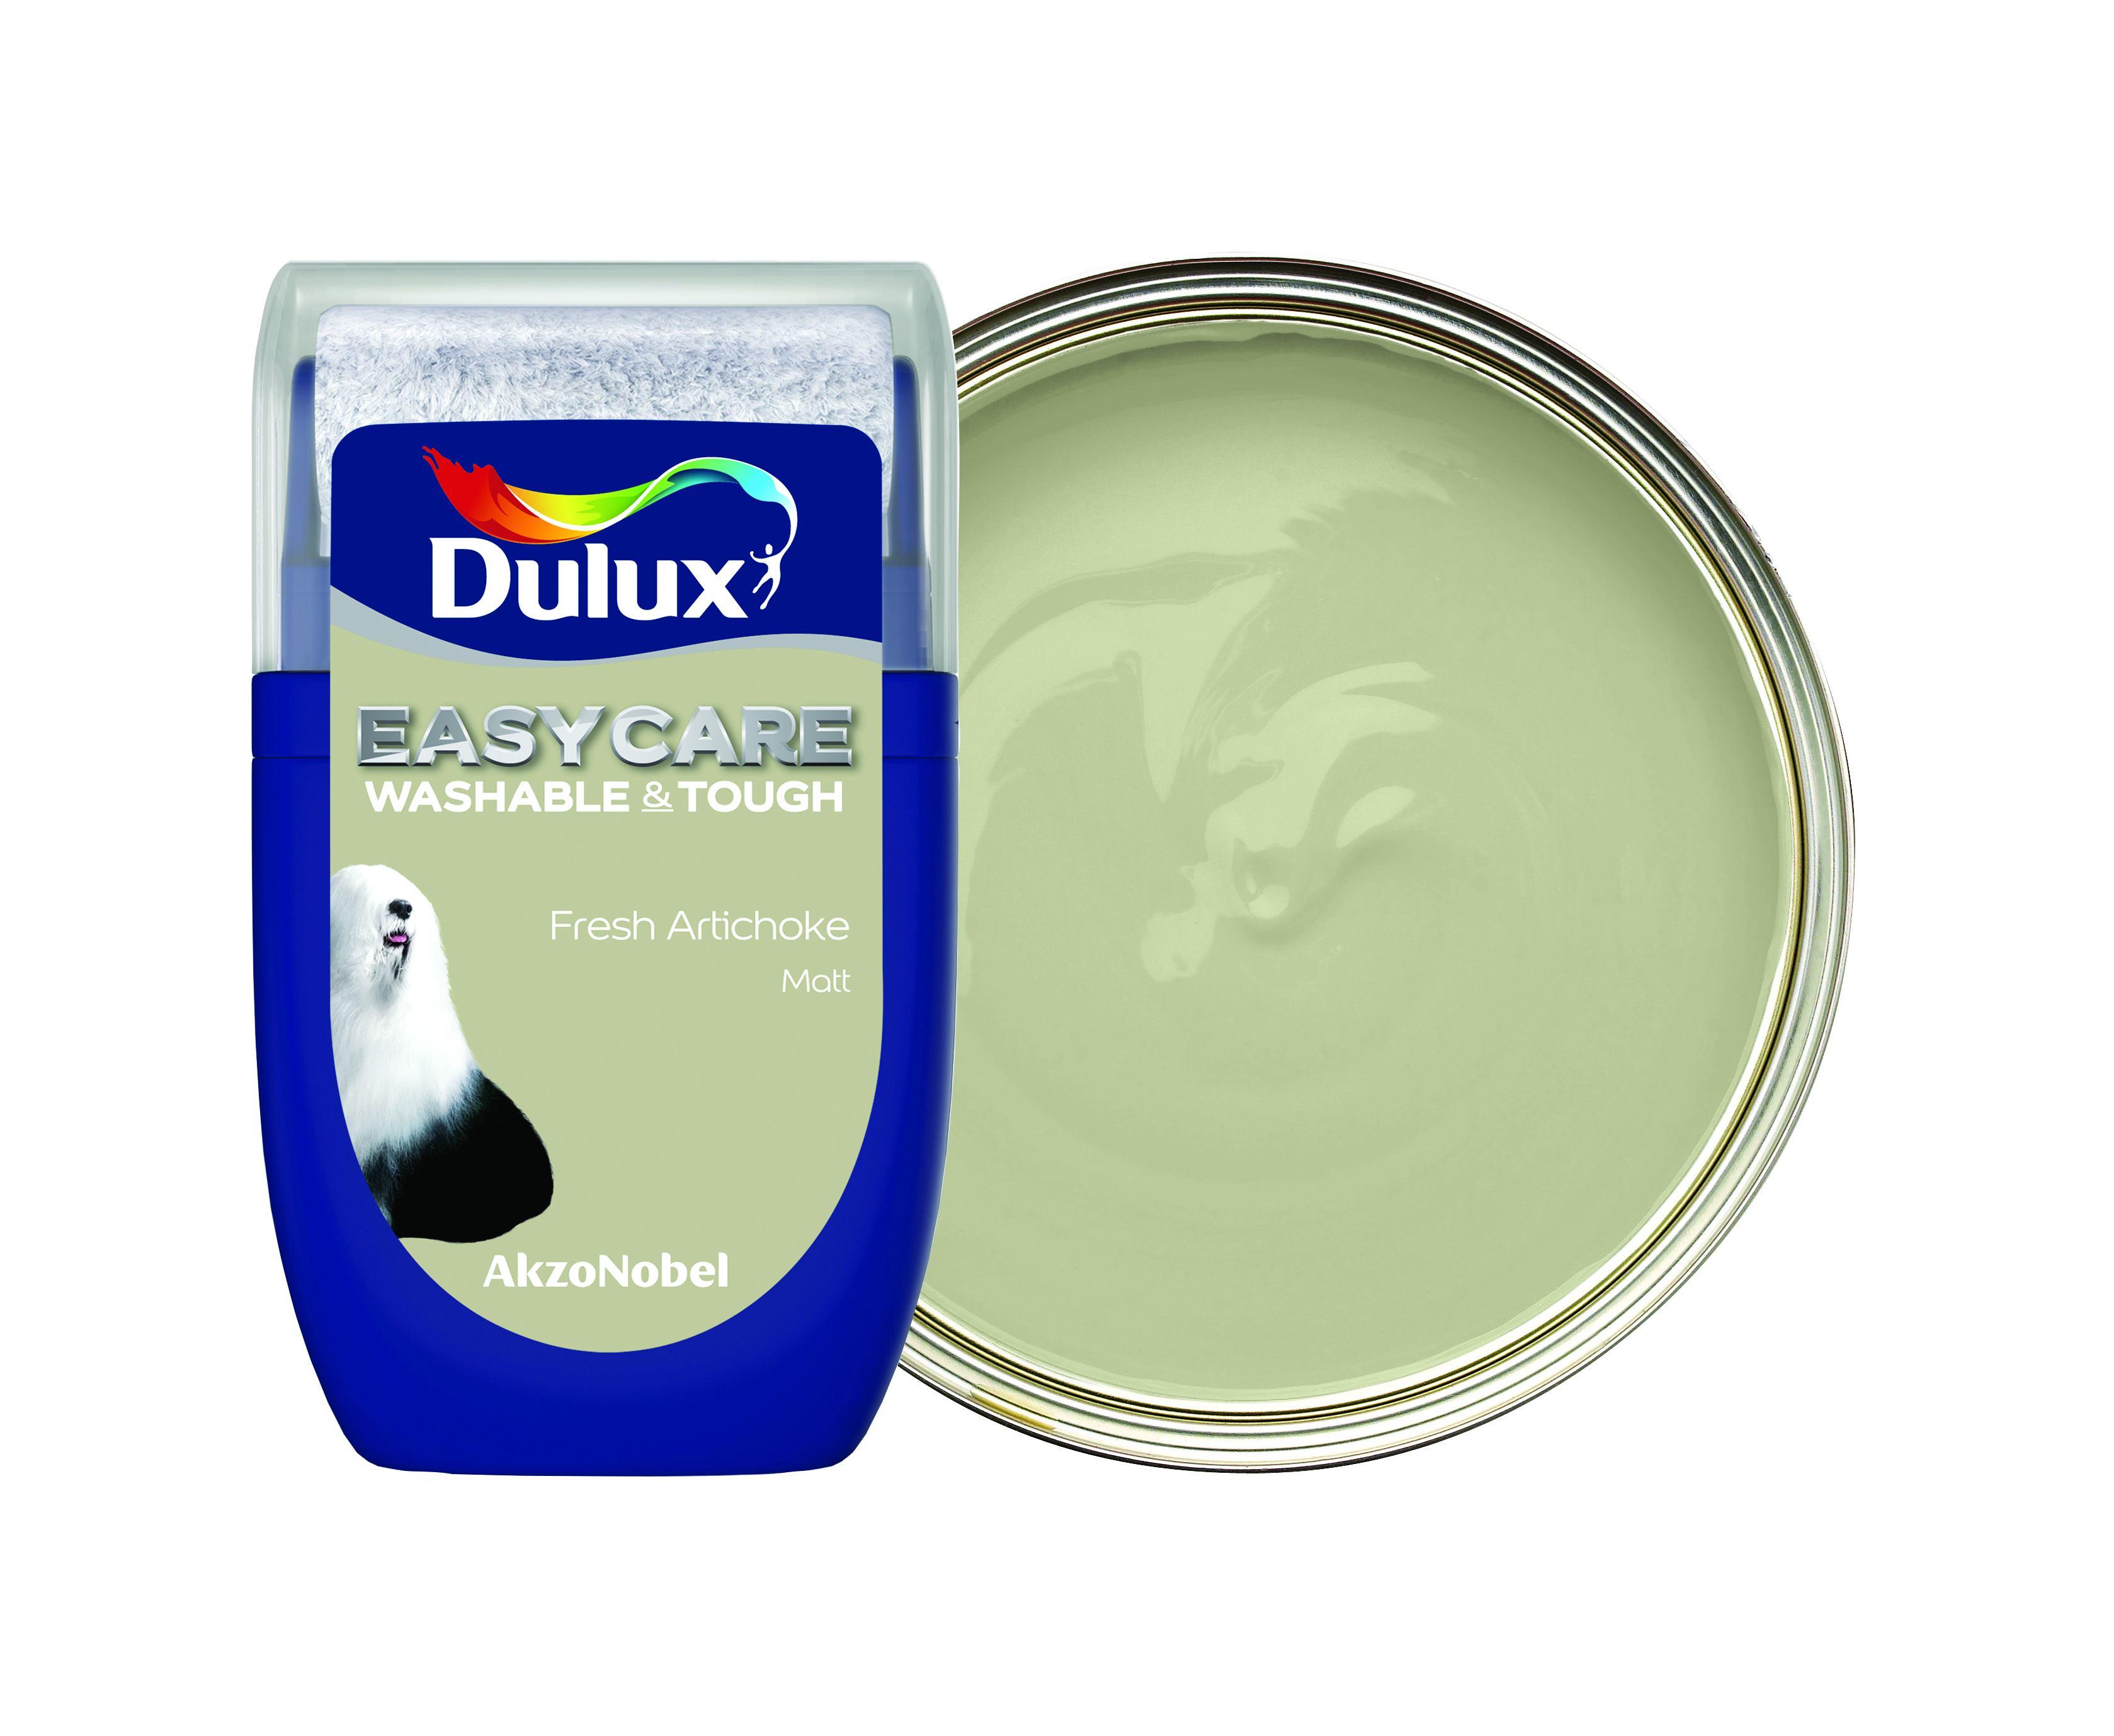 Dulux Easycare Washable & Tough Paint Tester Pot - Fresh Artichoke - 30ml